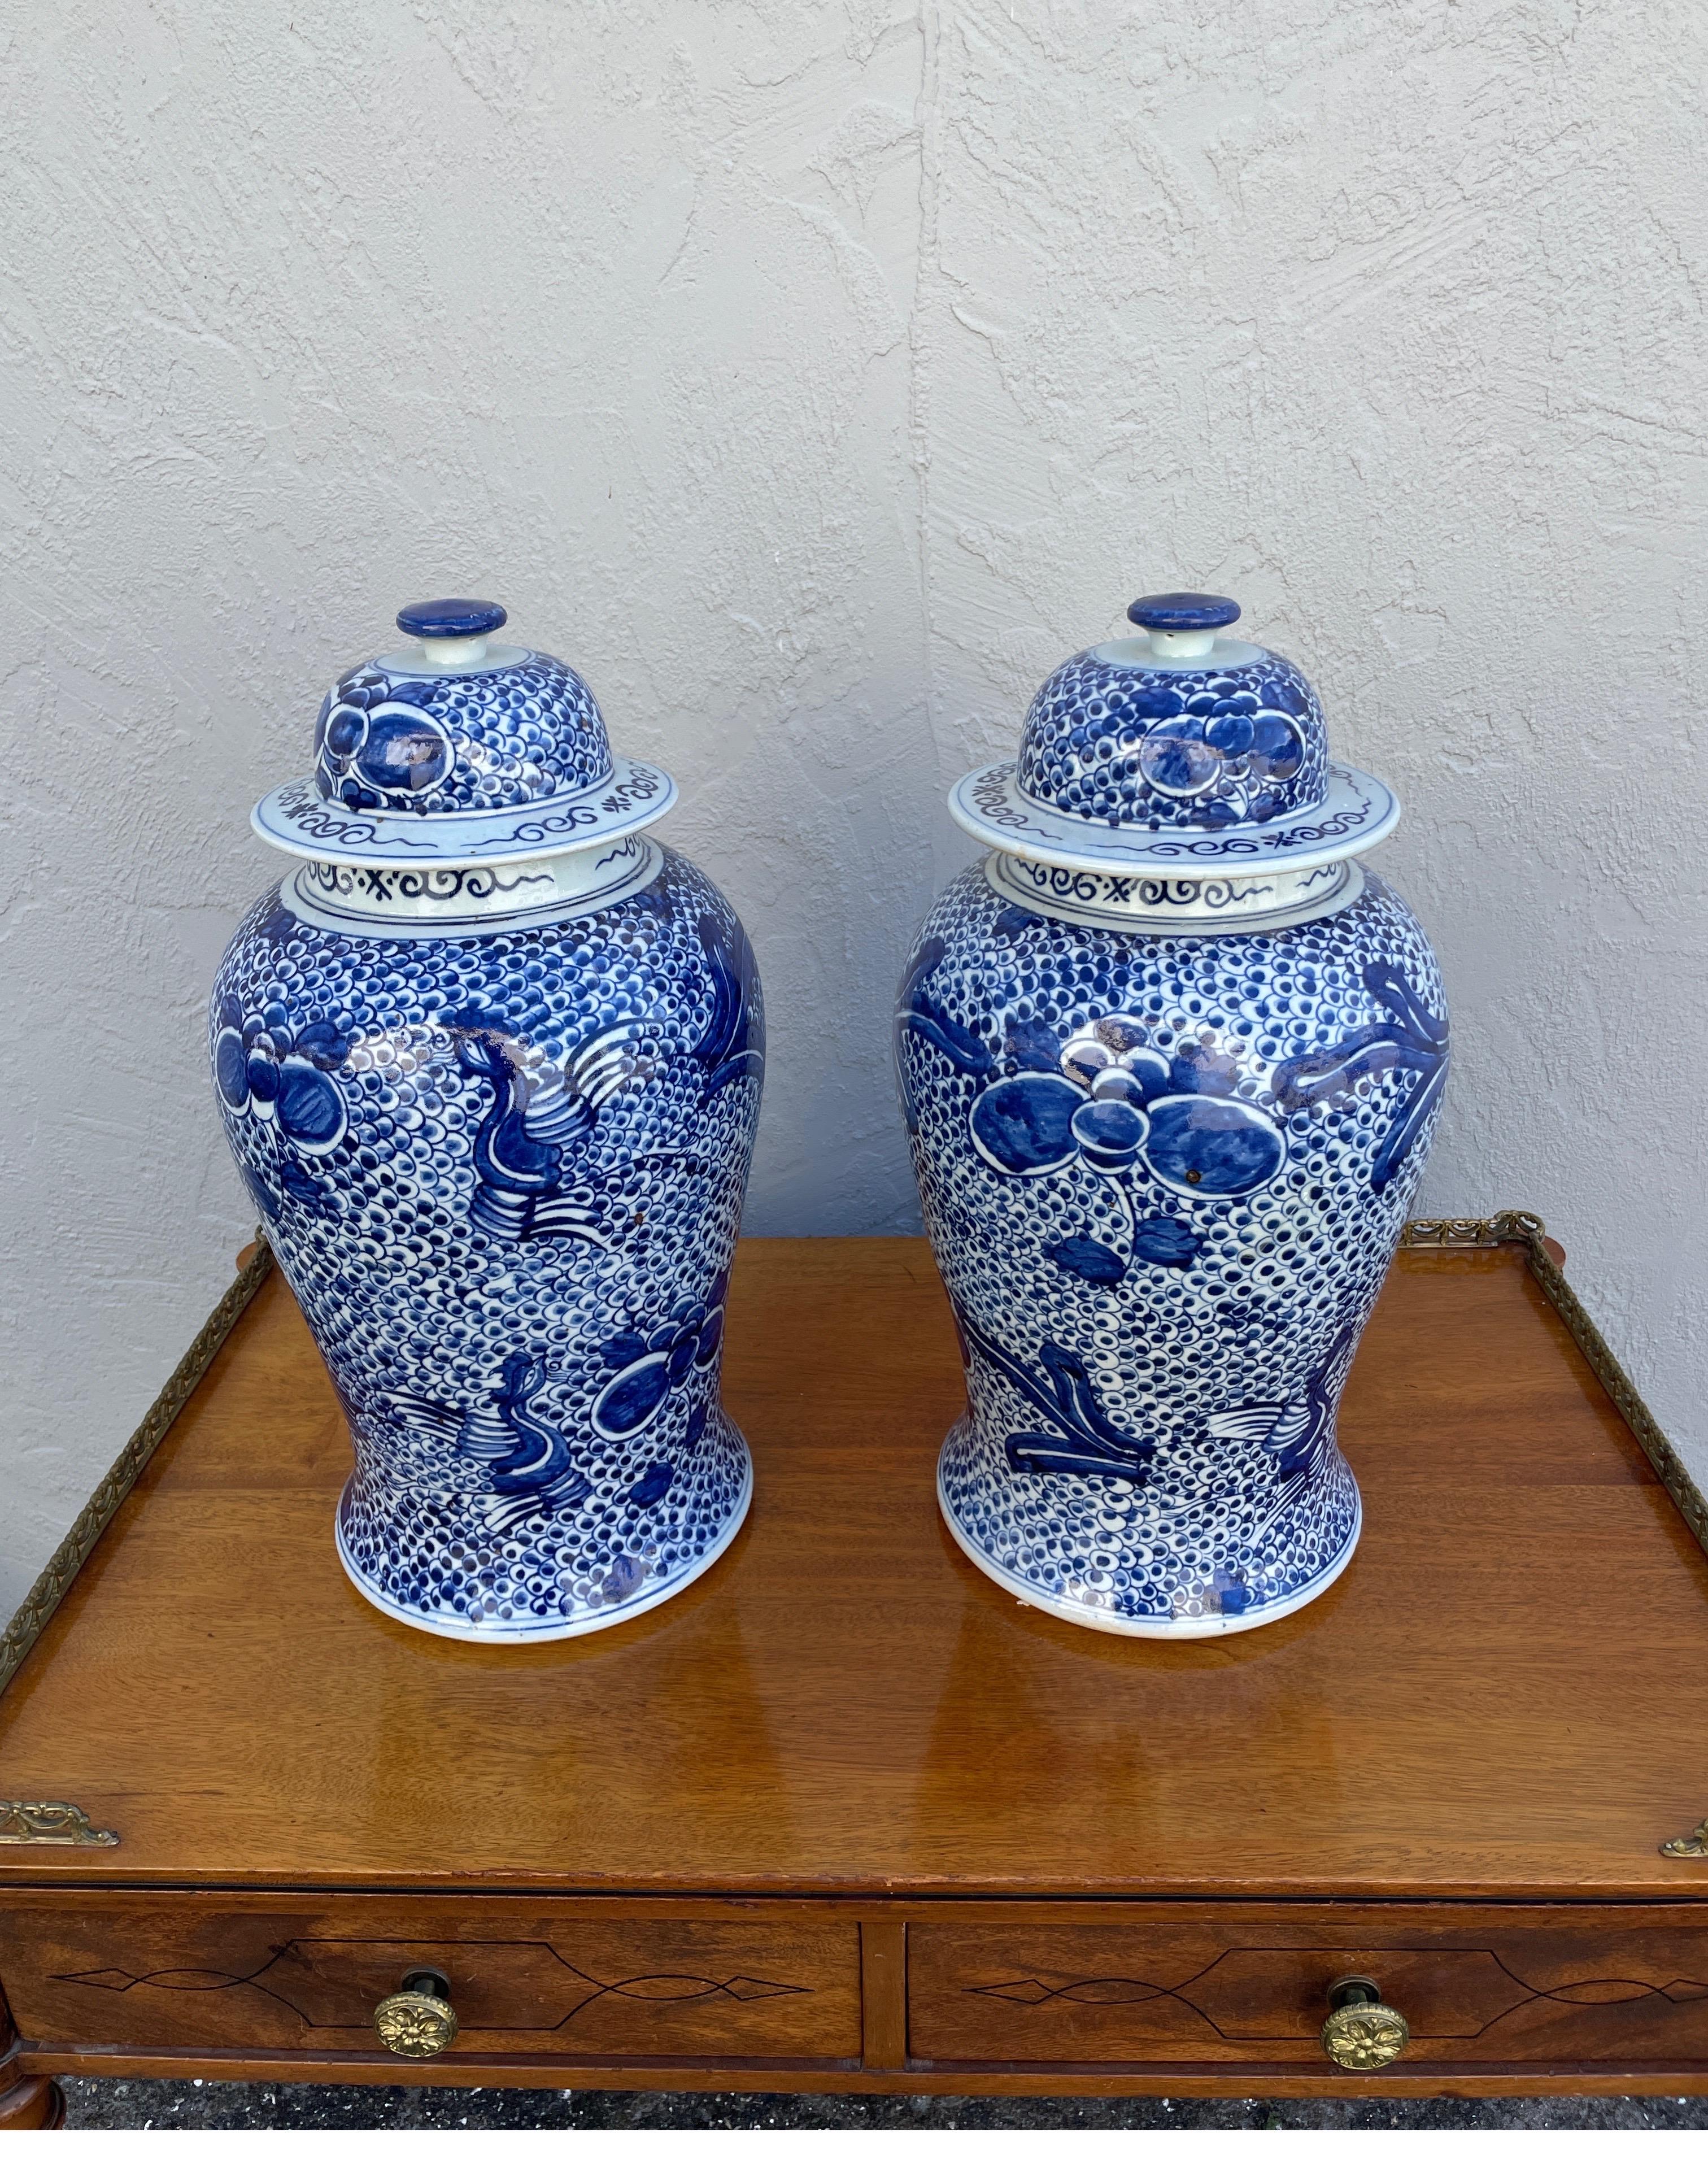 Vintage Paar auffällige blau-weiße Ingwerdosen mit Deckeln. Lebendiges zeitgenössisches Design.